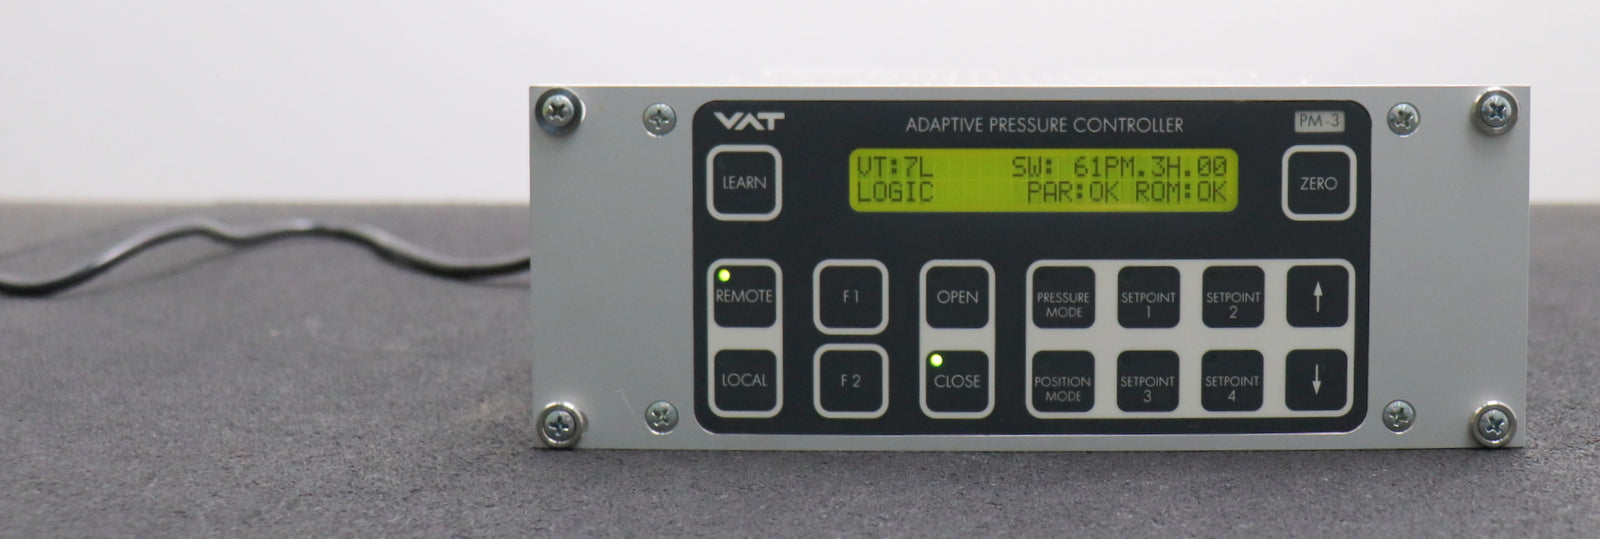 VAT Adaptive pressure controller PM-3 610PM-16AC-0002 Software 61=M.3H.00